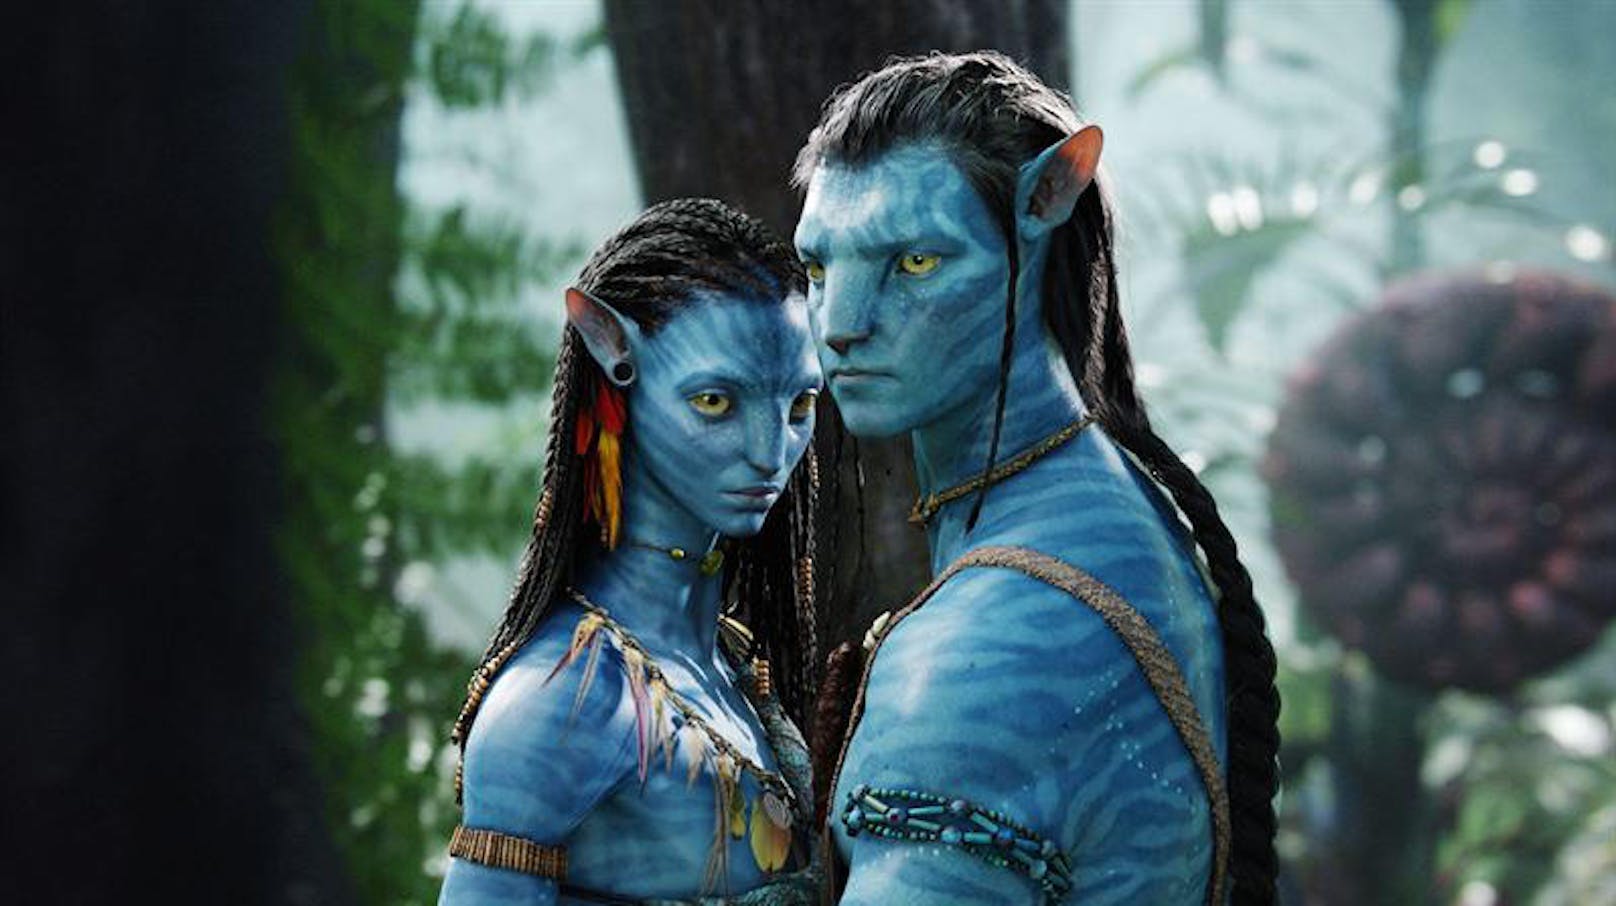 "Avatar": Jake Sully (Sam Worthington) soll in einem künstlichen Alien-Körper das Volk der Na'vi unterwandern, verliebt sich aber in die Kriegerin Neytiri (Zoë Saldana).